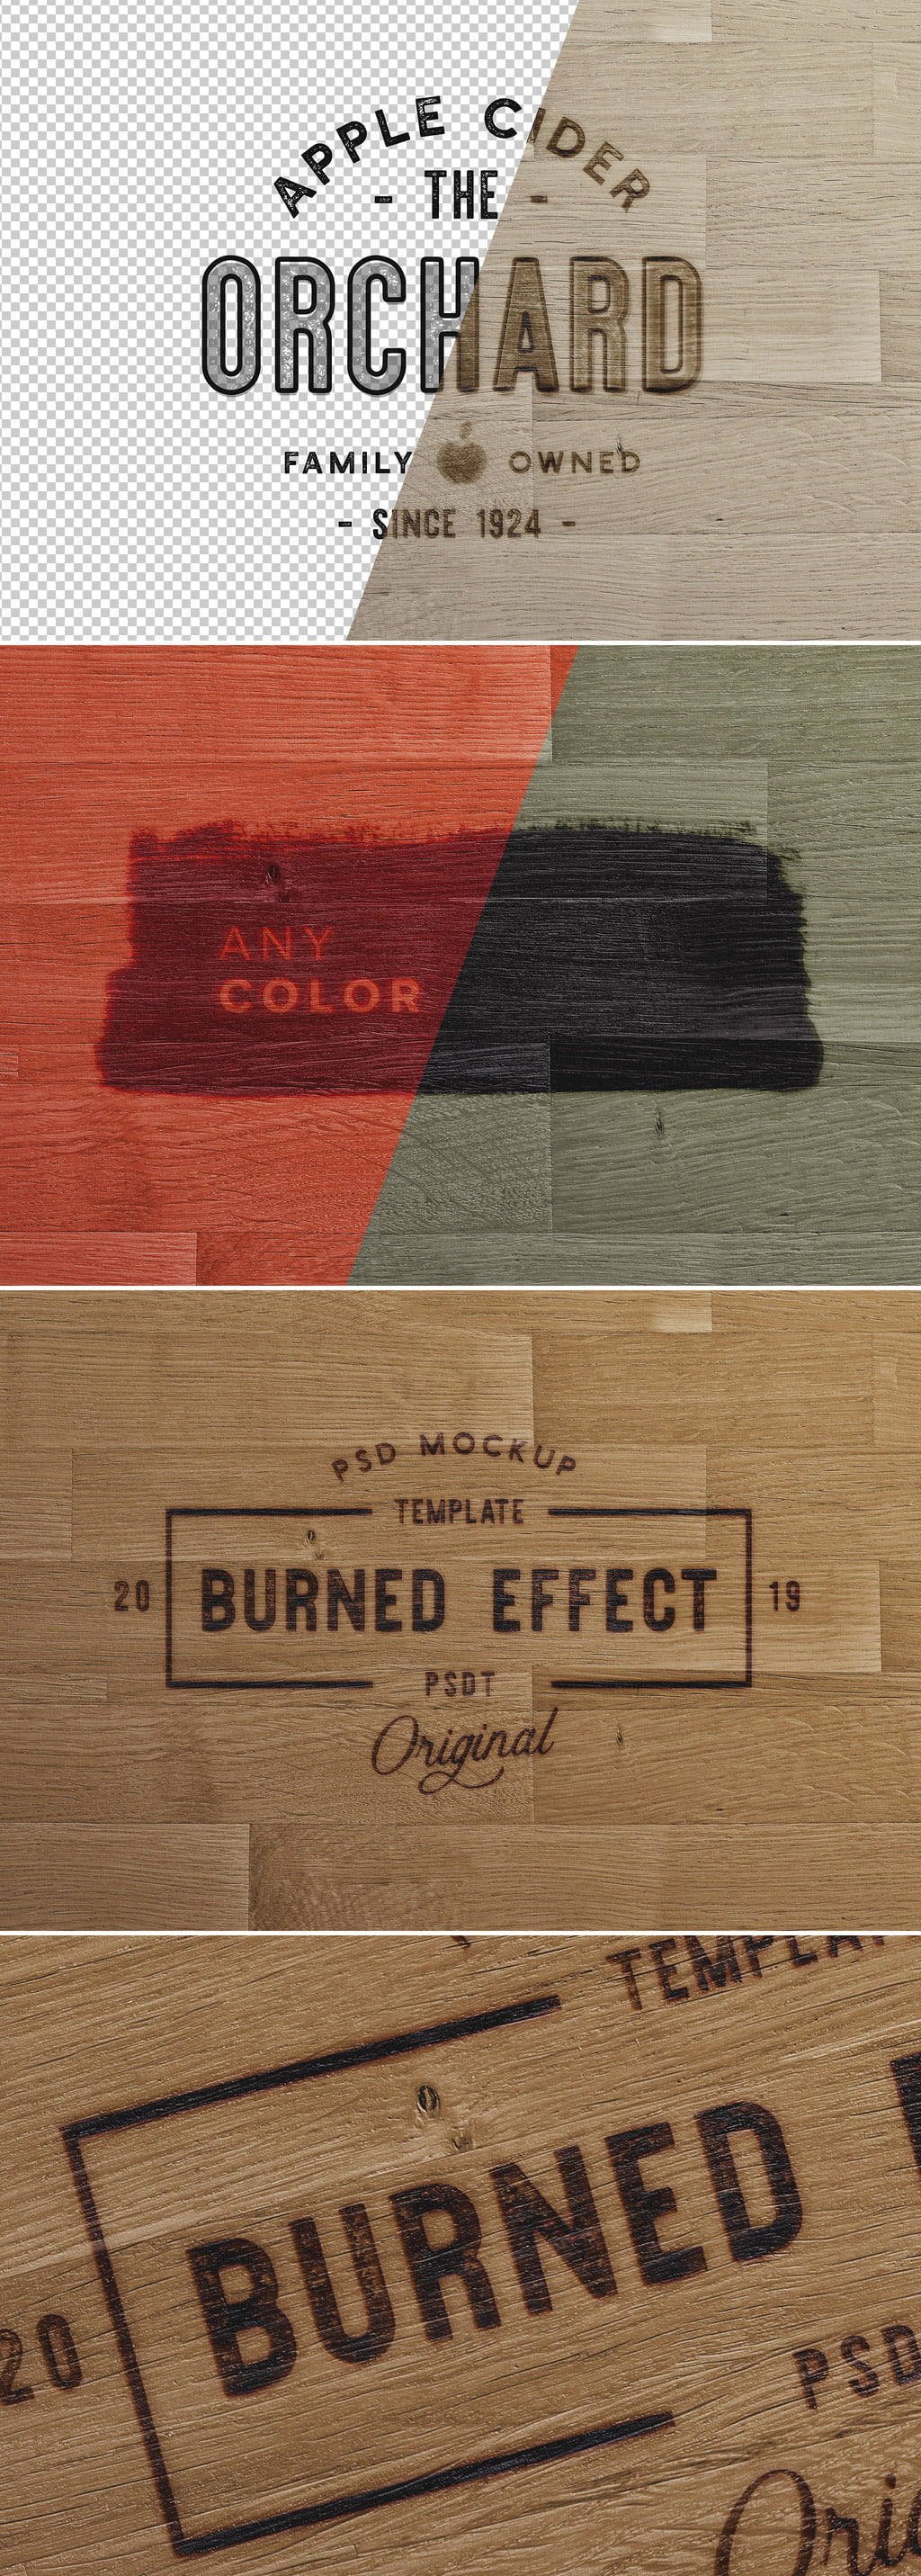 دانلود Wooden Surface with Burn Effect Mockup - افکت طرح سوخته روی چوب